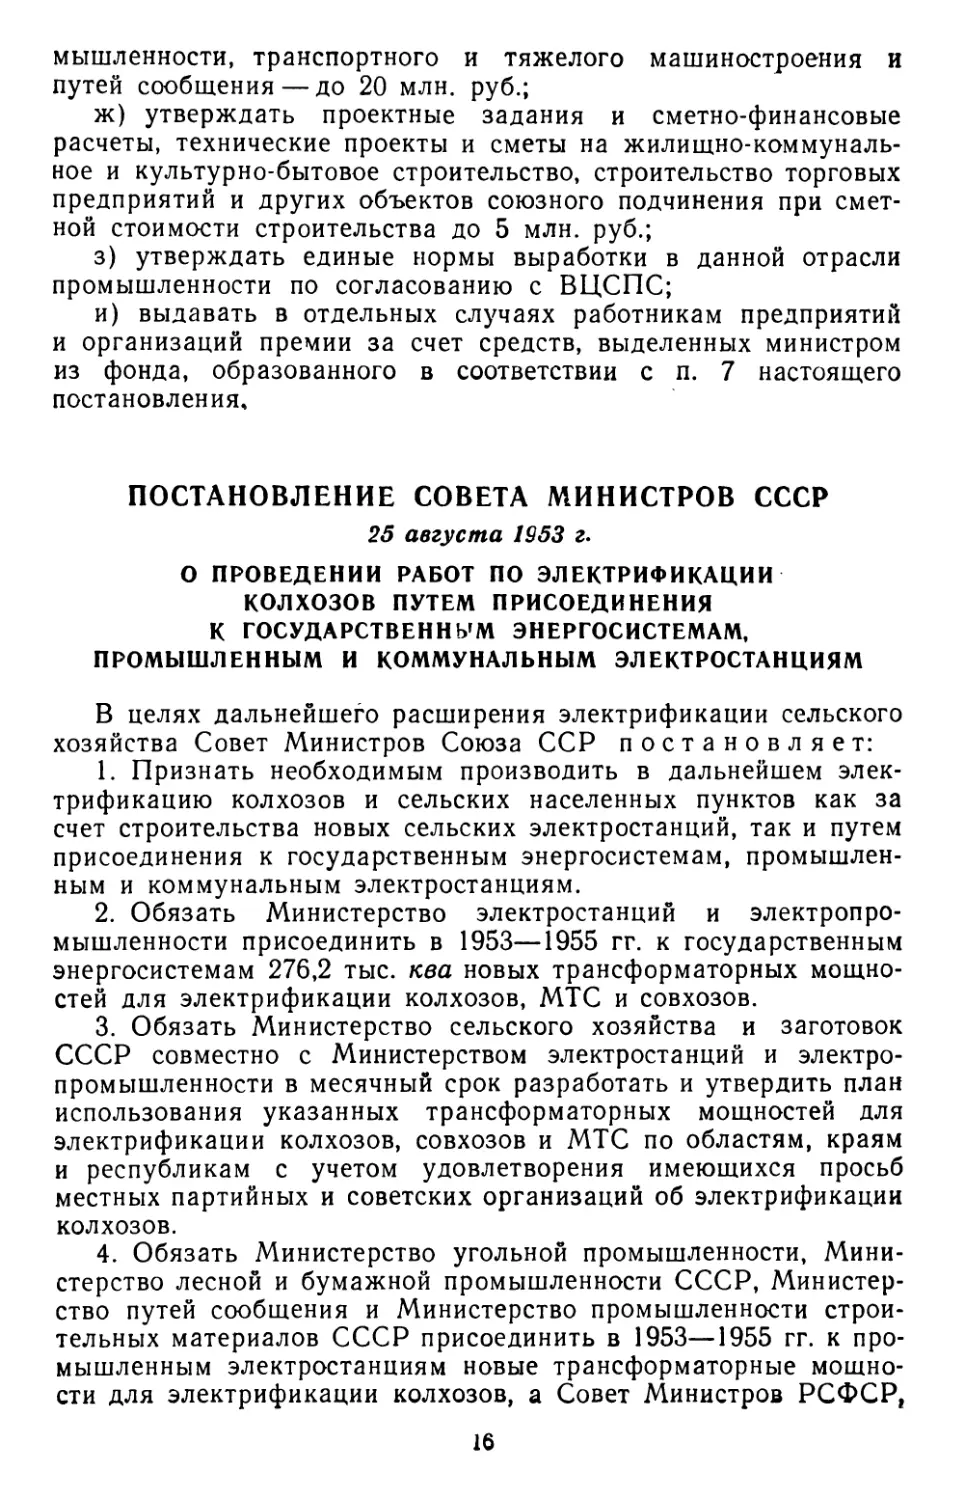 Постановление Совета Министров СССР, 25 августа 1953 г. О проведении работ по электрификации колхозов путем присоединения к государственным энергосистемам, промышленным и коммунальным электростанциям